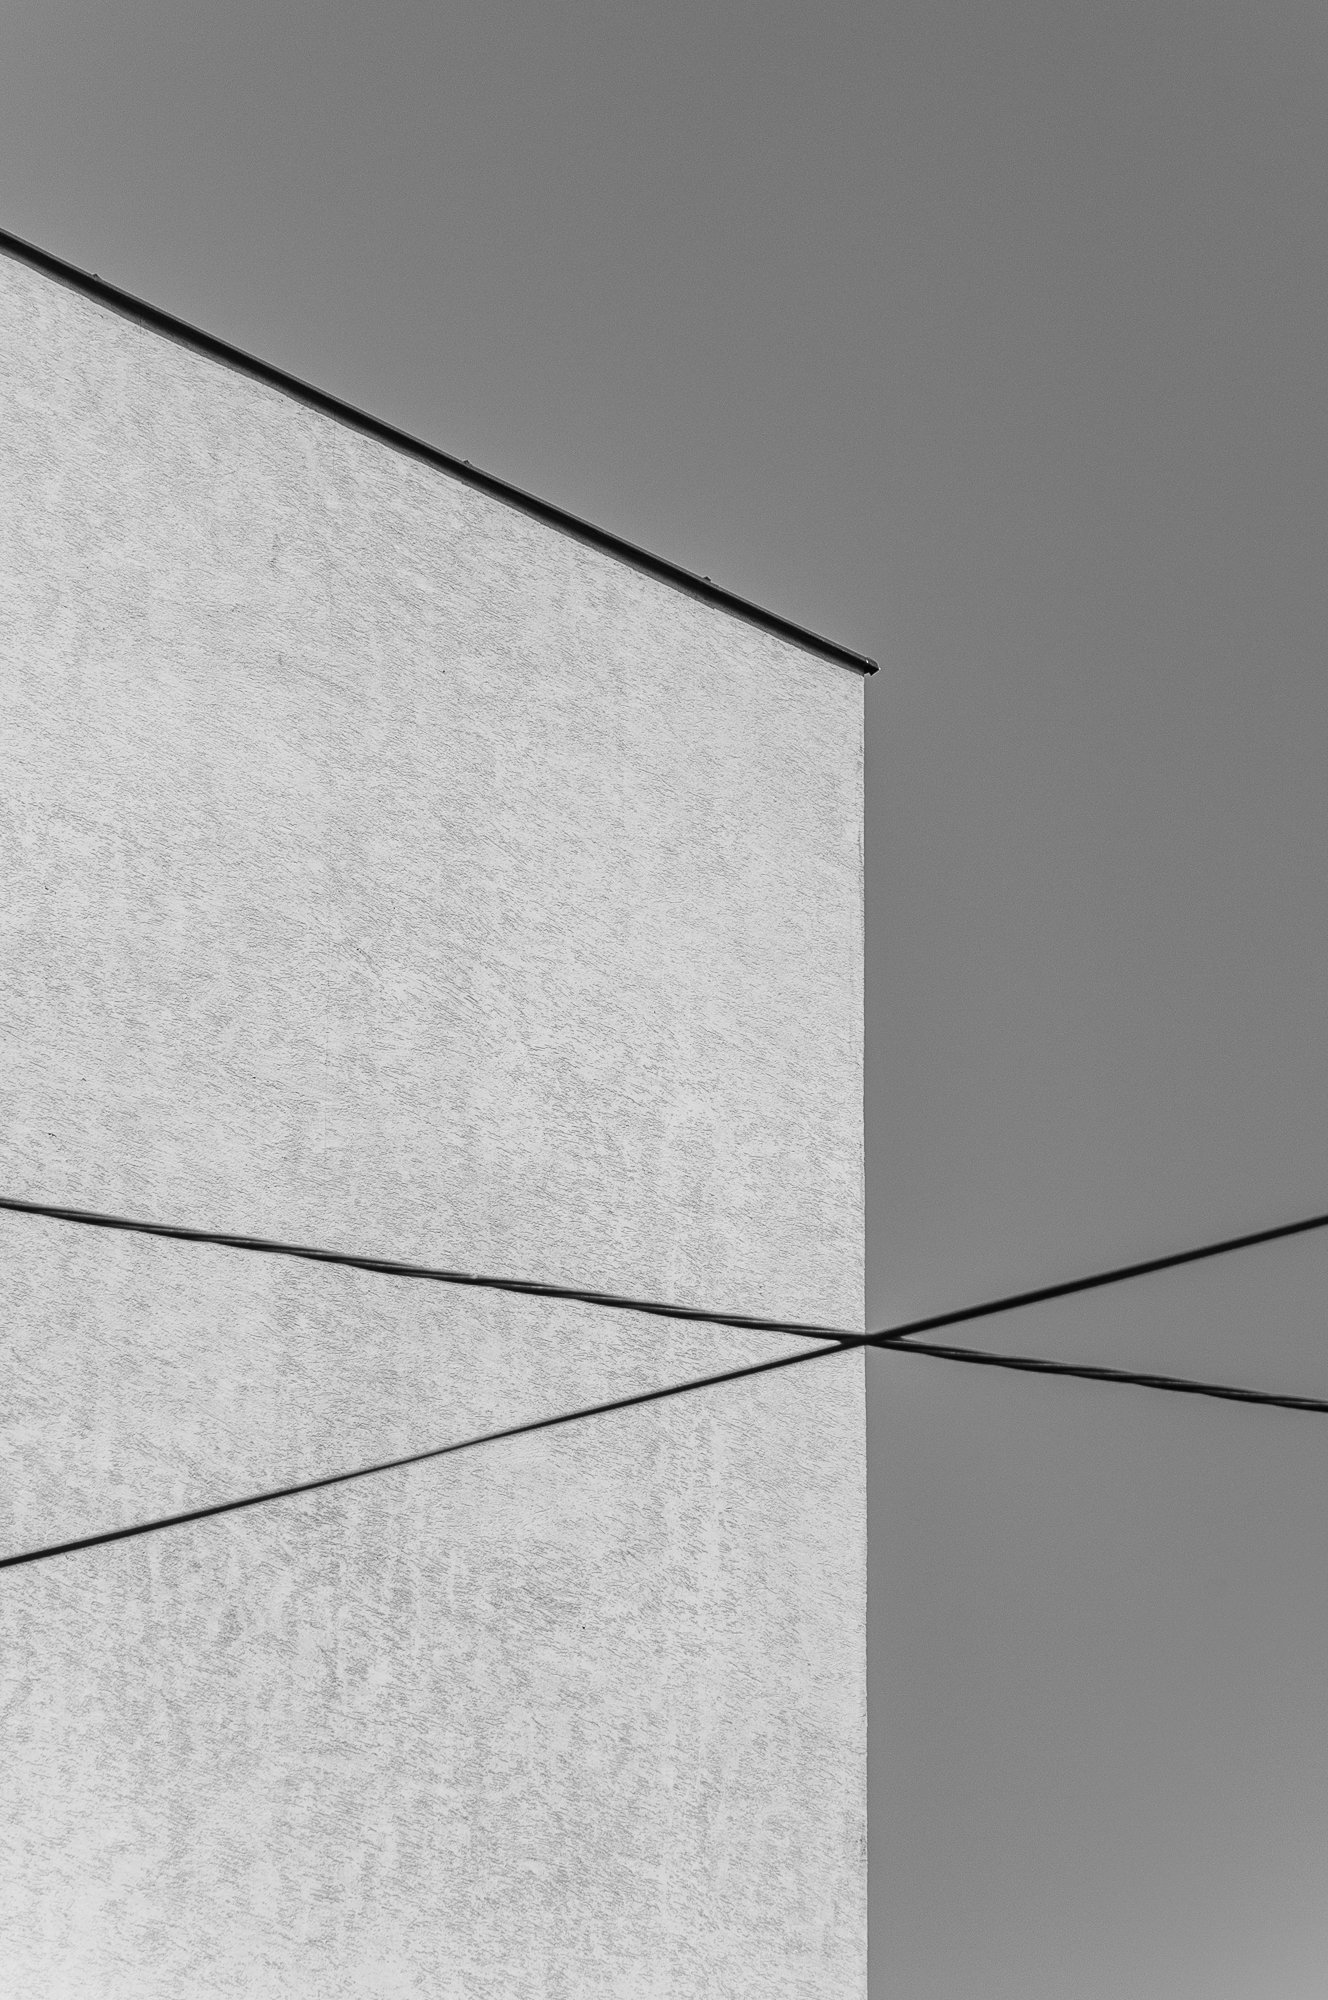 Adam Mazek Photography Warsaw (Warszawa) 2019. Post: "Conversation." Minimalism. Perspective. Geometry.